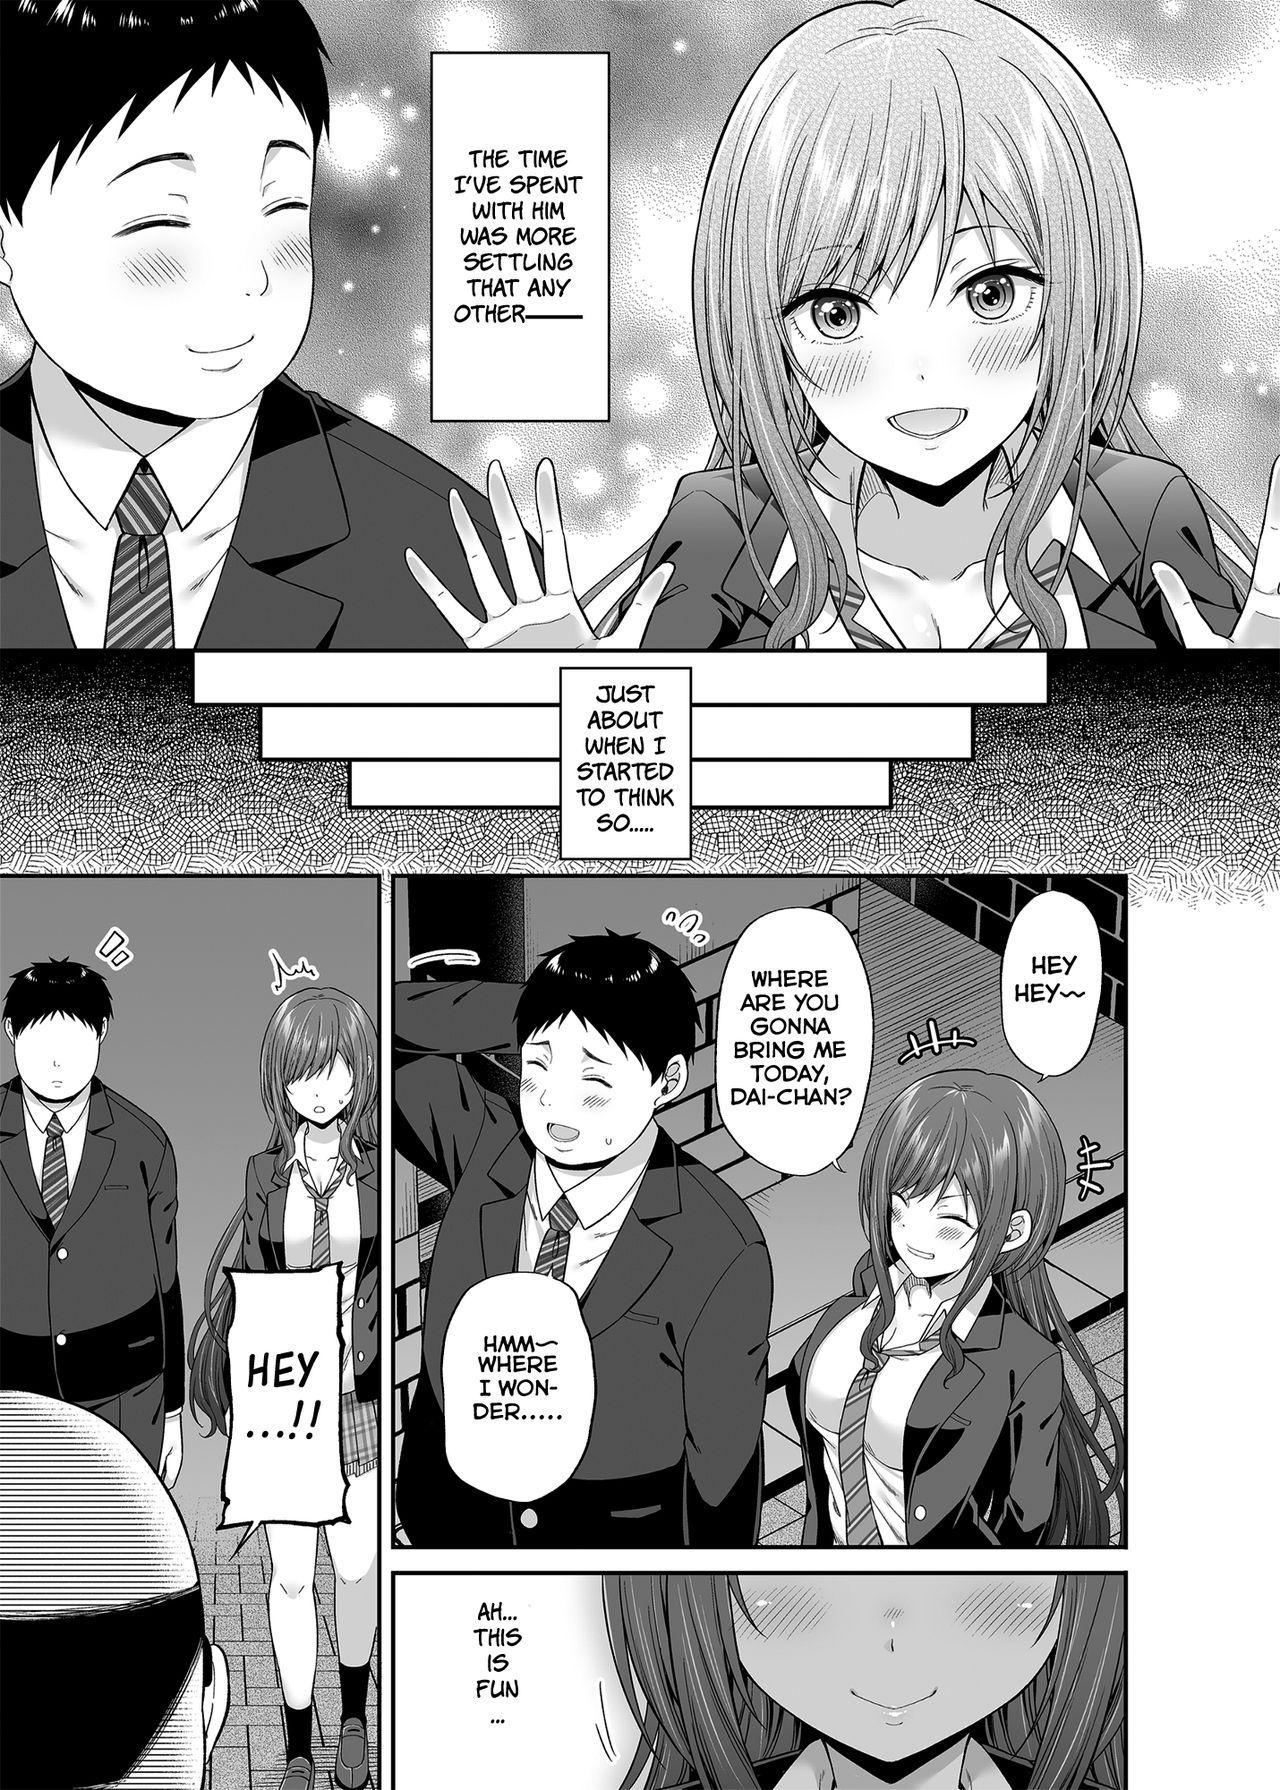 Teasing Enkoakujyo Jya Dame Desuka? - Original Strip - Page 8